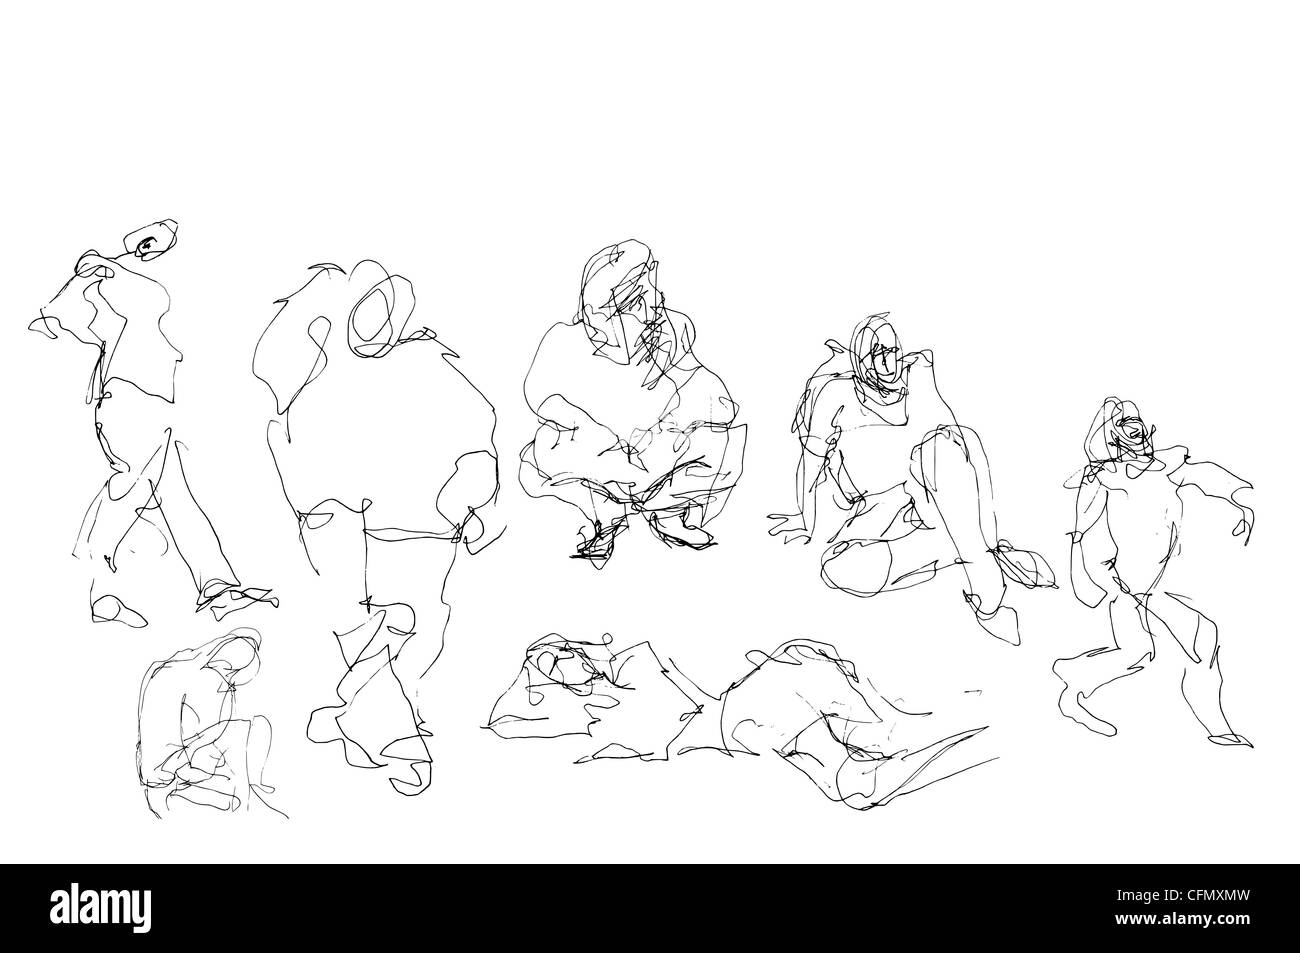 Una serie di 17 bozzetti/scarabocchietti informali disegnati a mano, da utilizzare come illustrazioni di vari soggetti. Divertente divertente divertente strano sciocco o grave mortale. Foto Stock